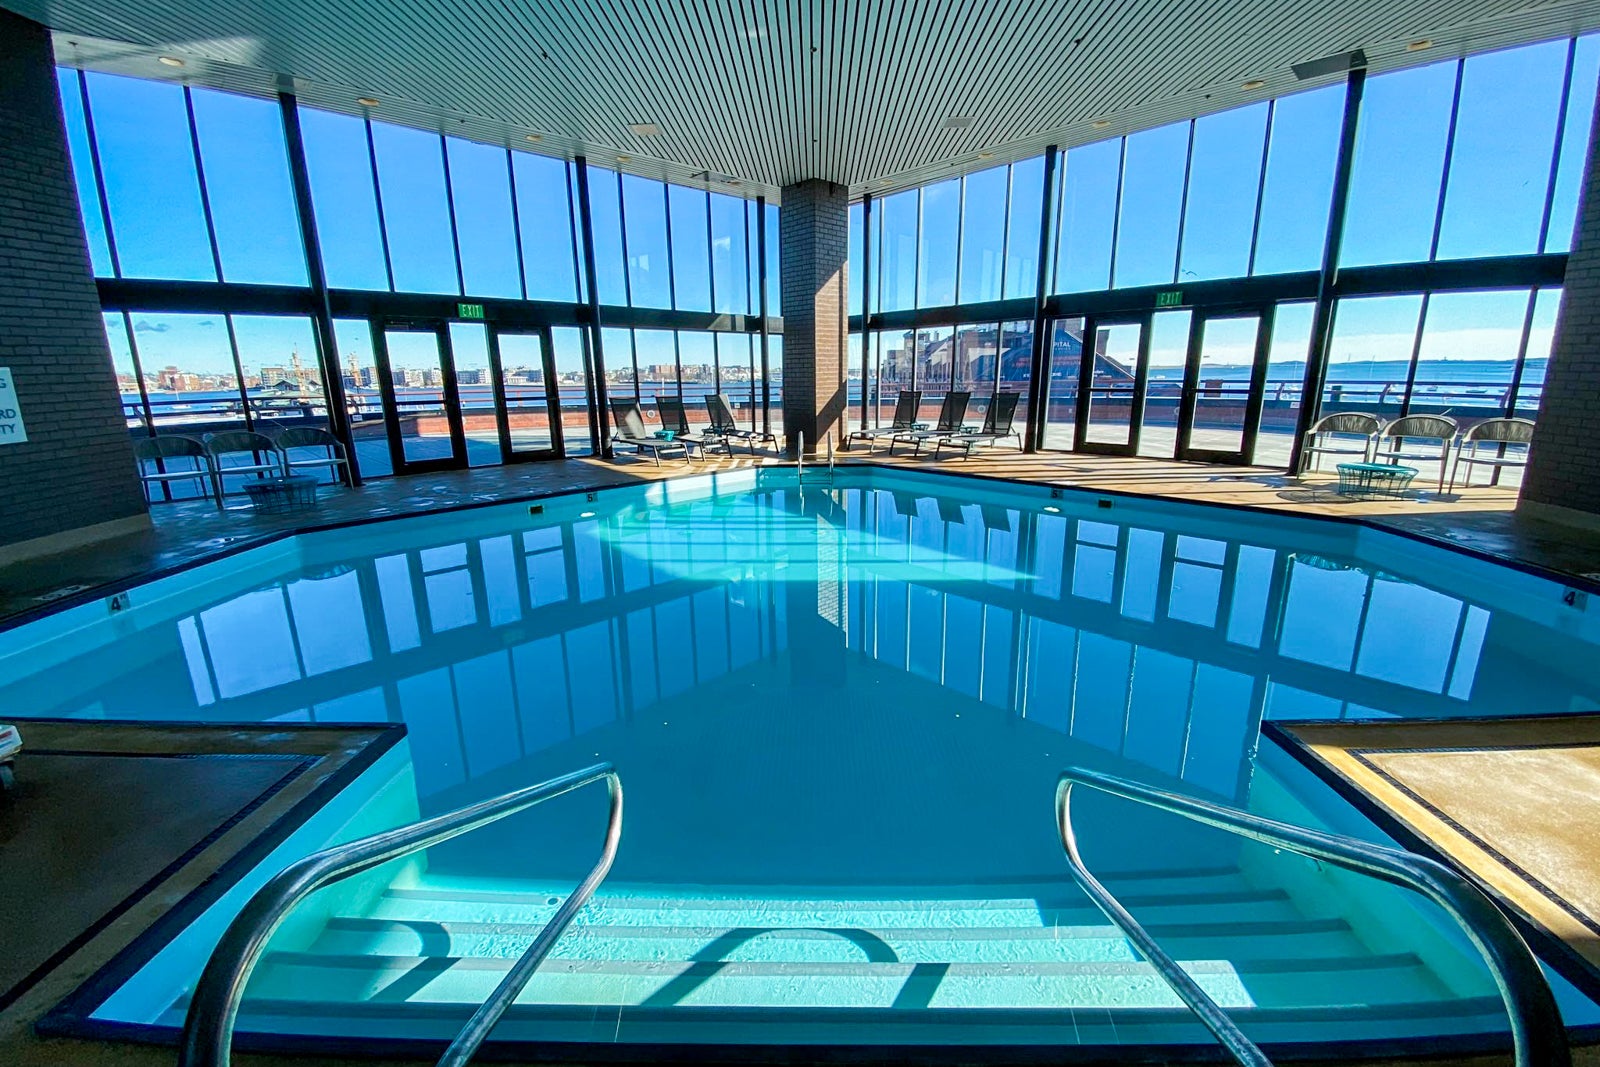 An indoor hotel pool